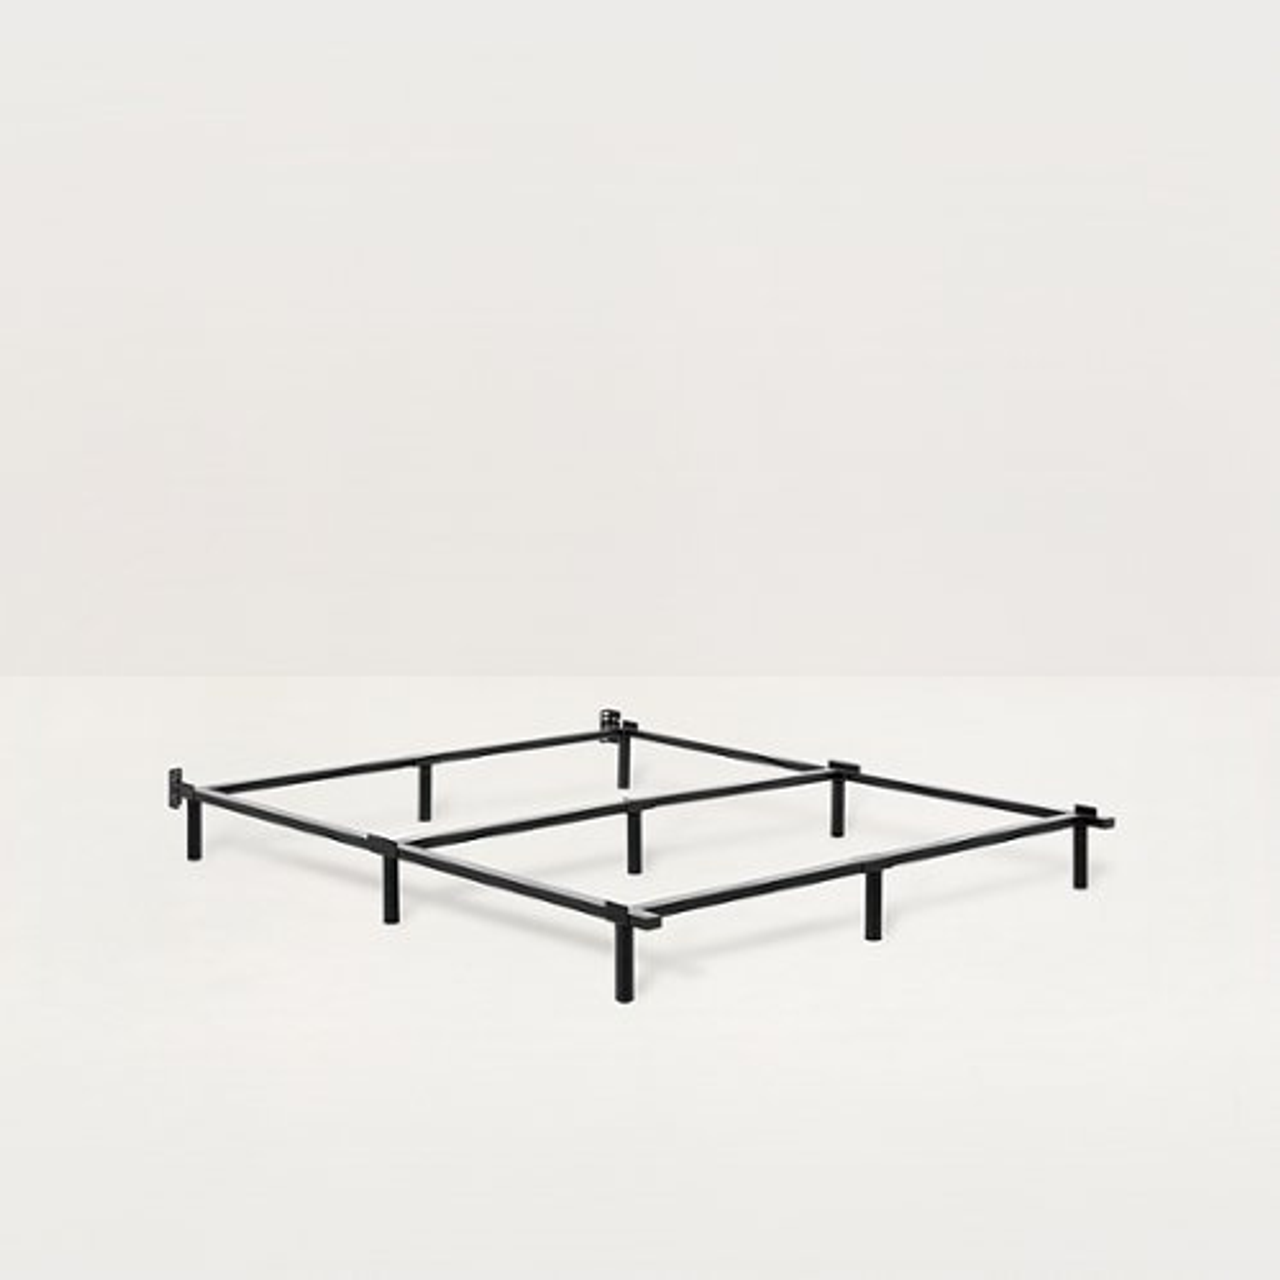 Tuft & Needle Metal Bed Frame - Full - Black